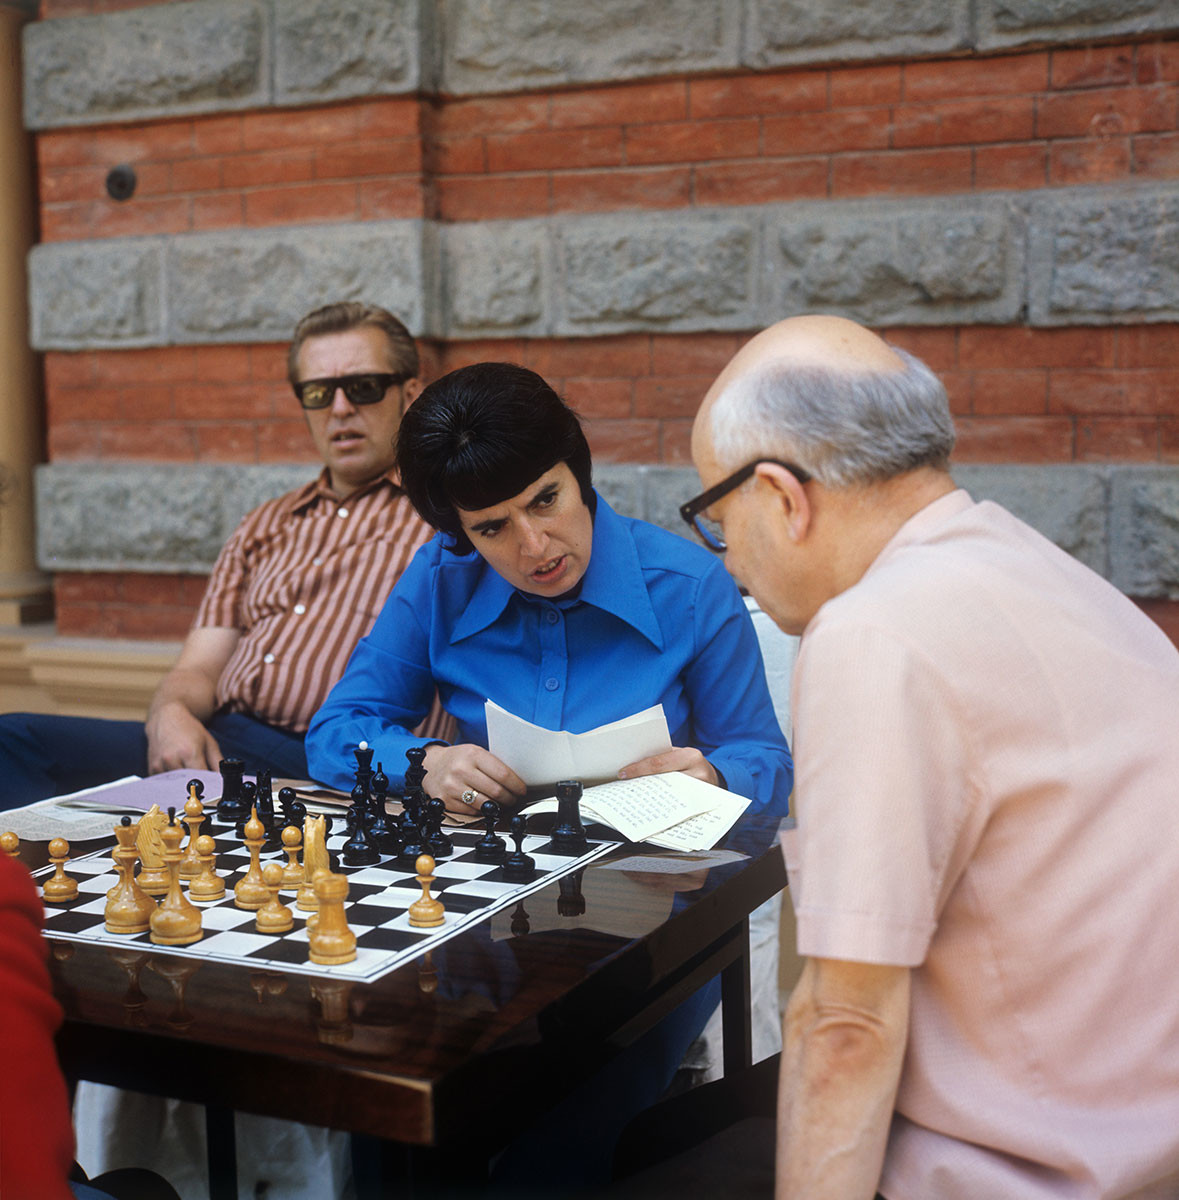 Nona Gaprindashvili avec des entraîneurs, 1974. République socialiste soviétique de Géorgie, Tbilissi